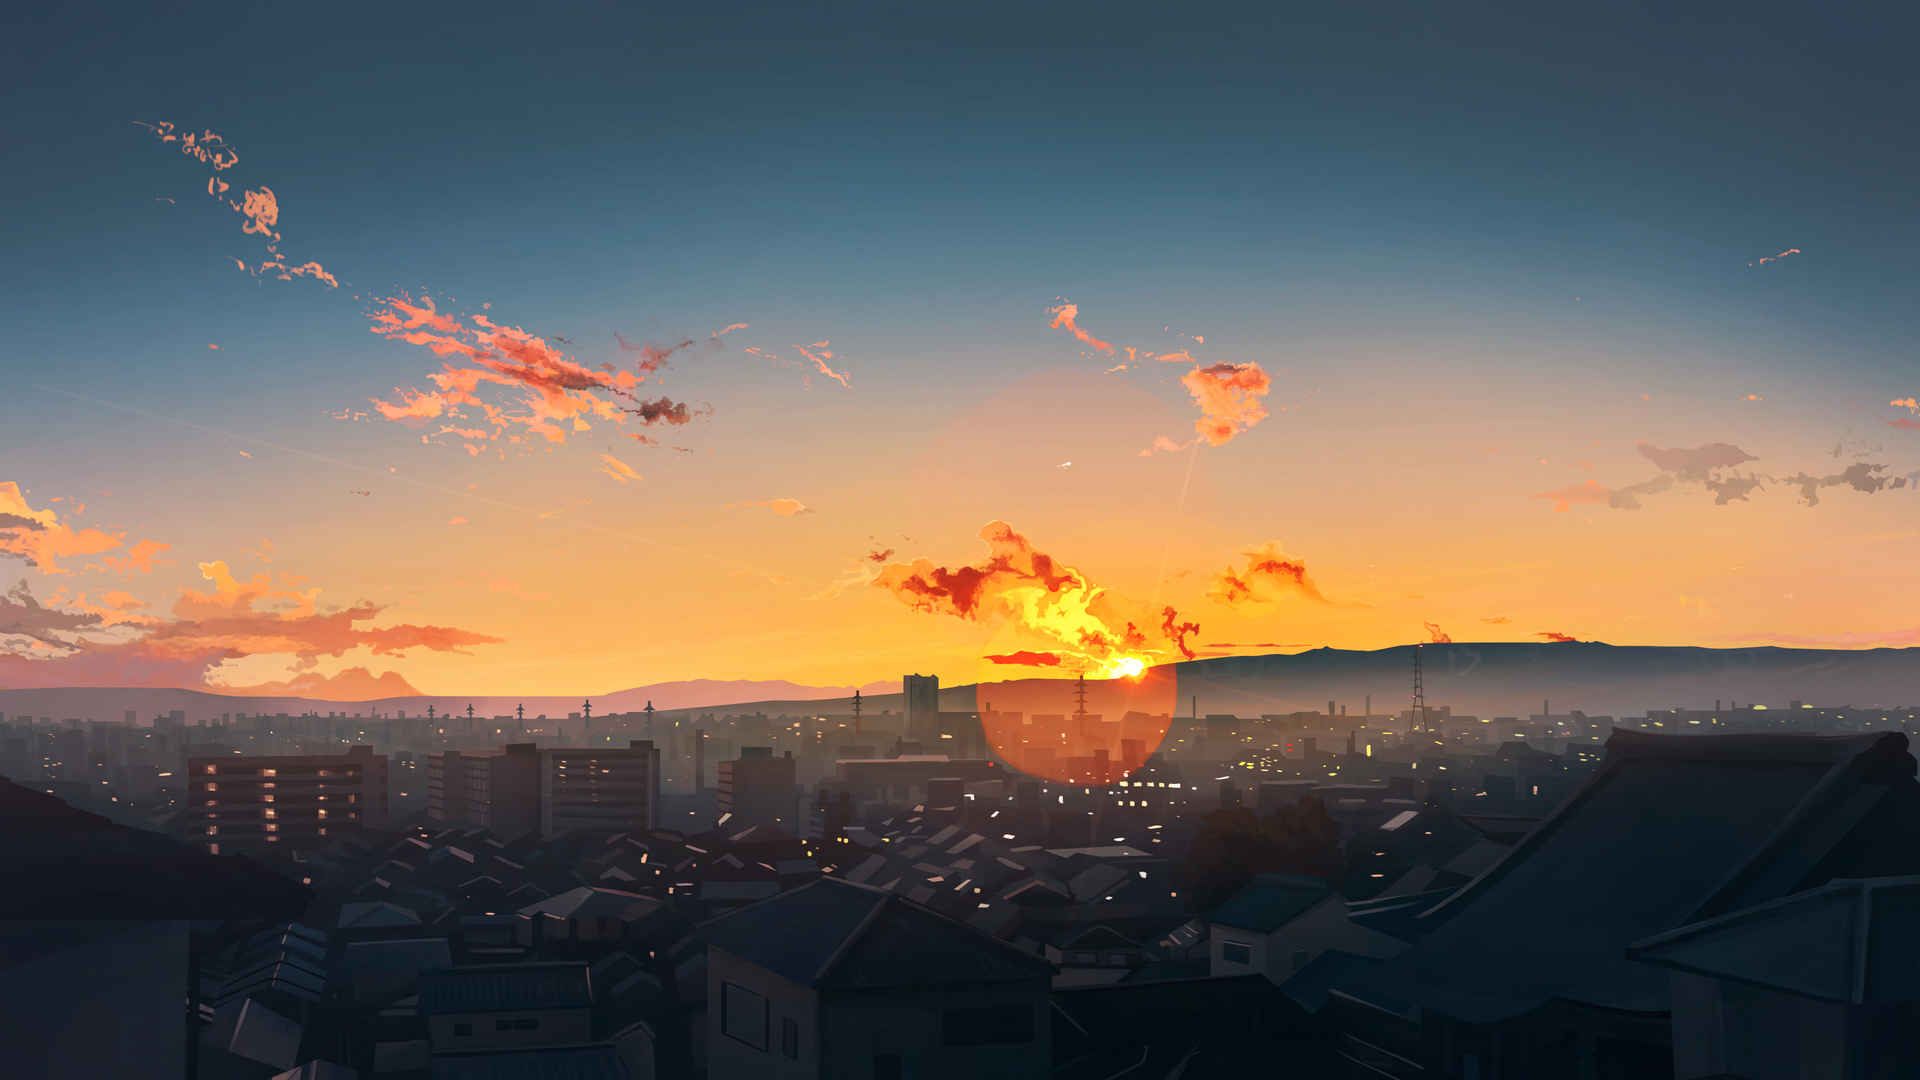 天空 夕阳 插画风景4k动漫壁纸3840x2160